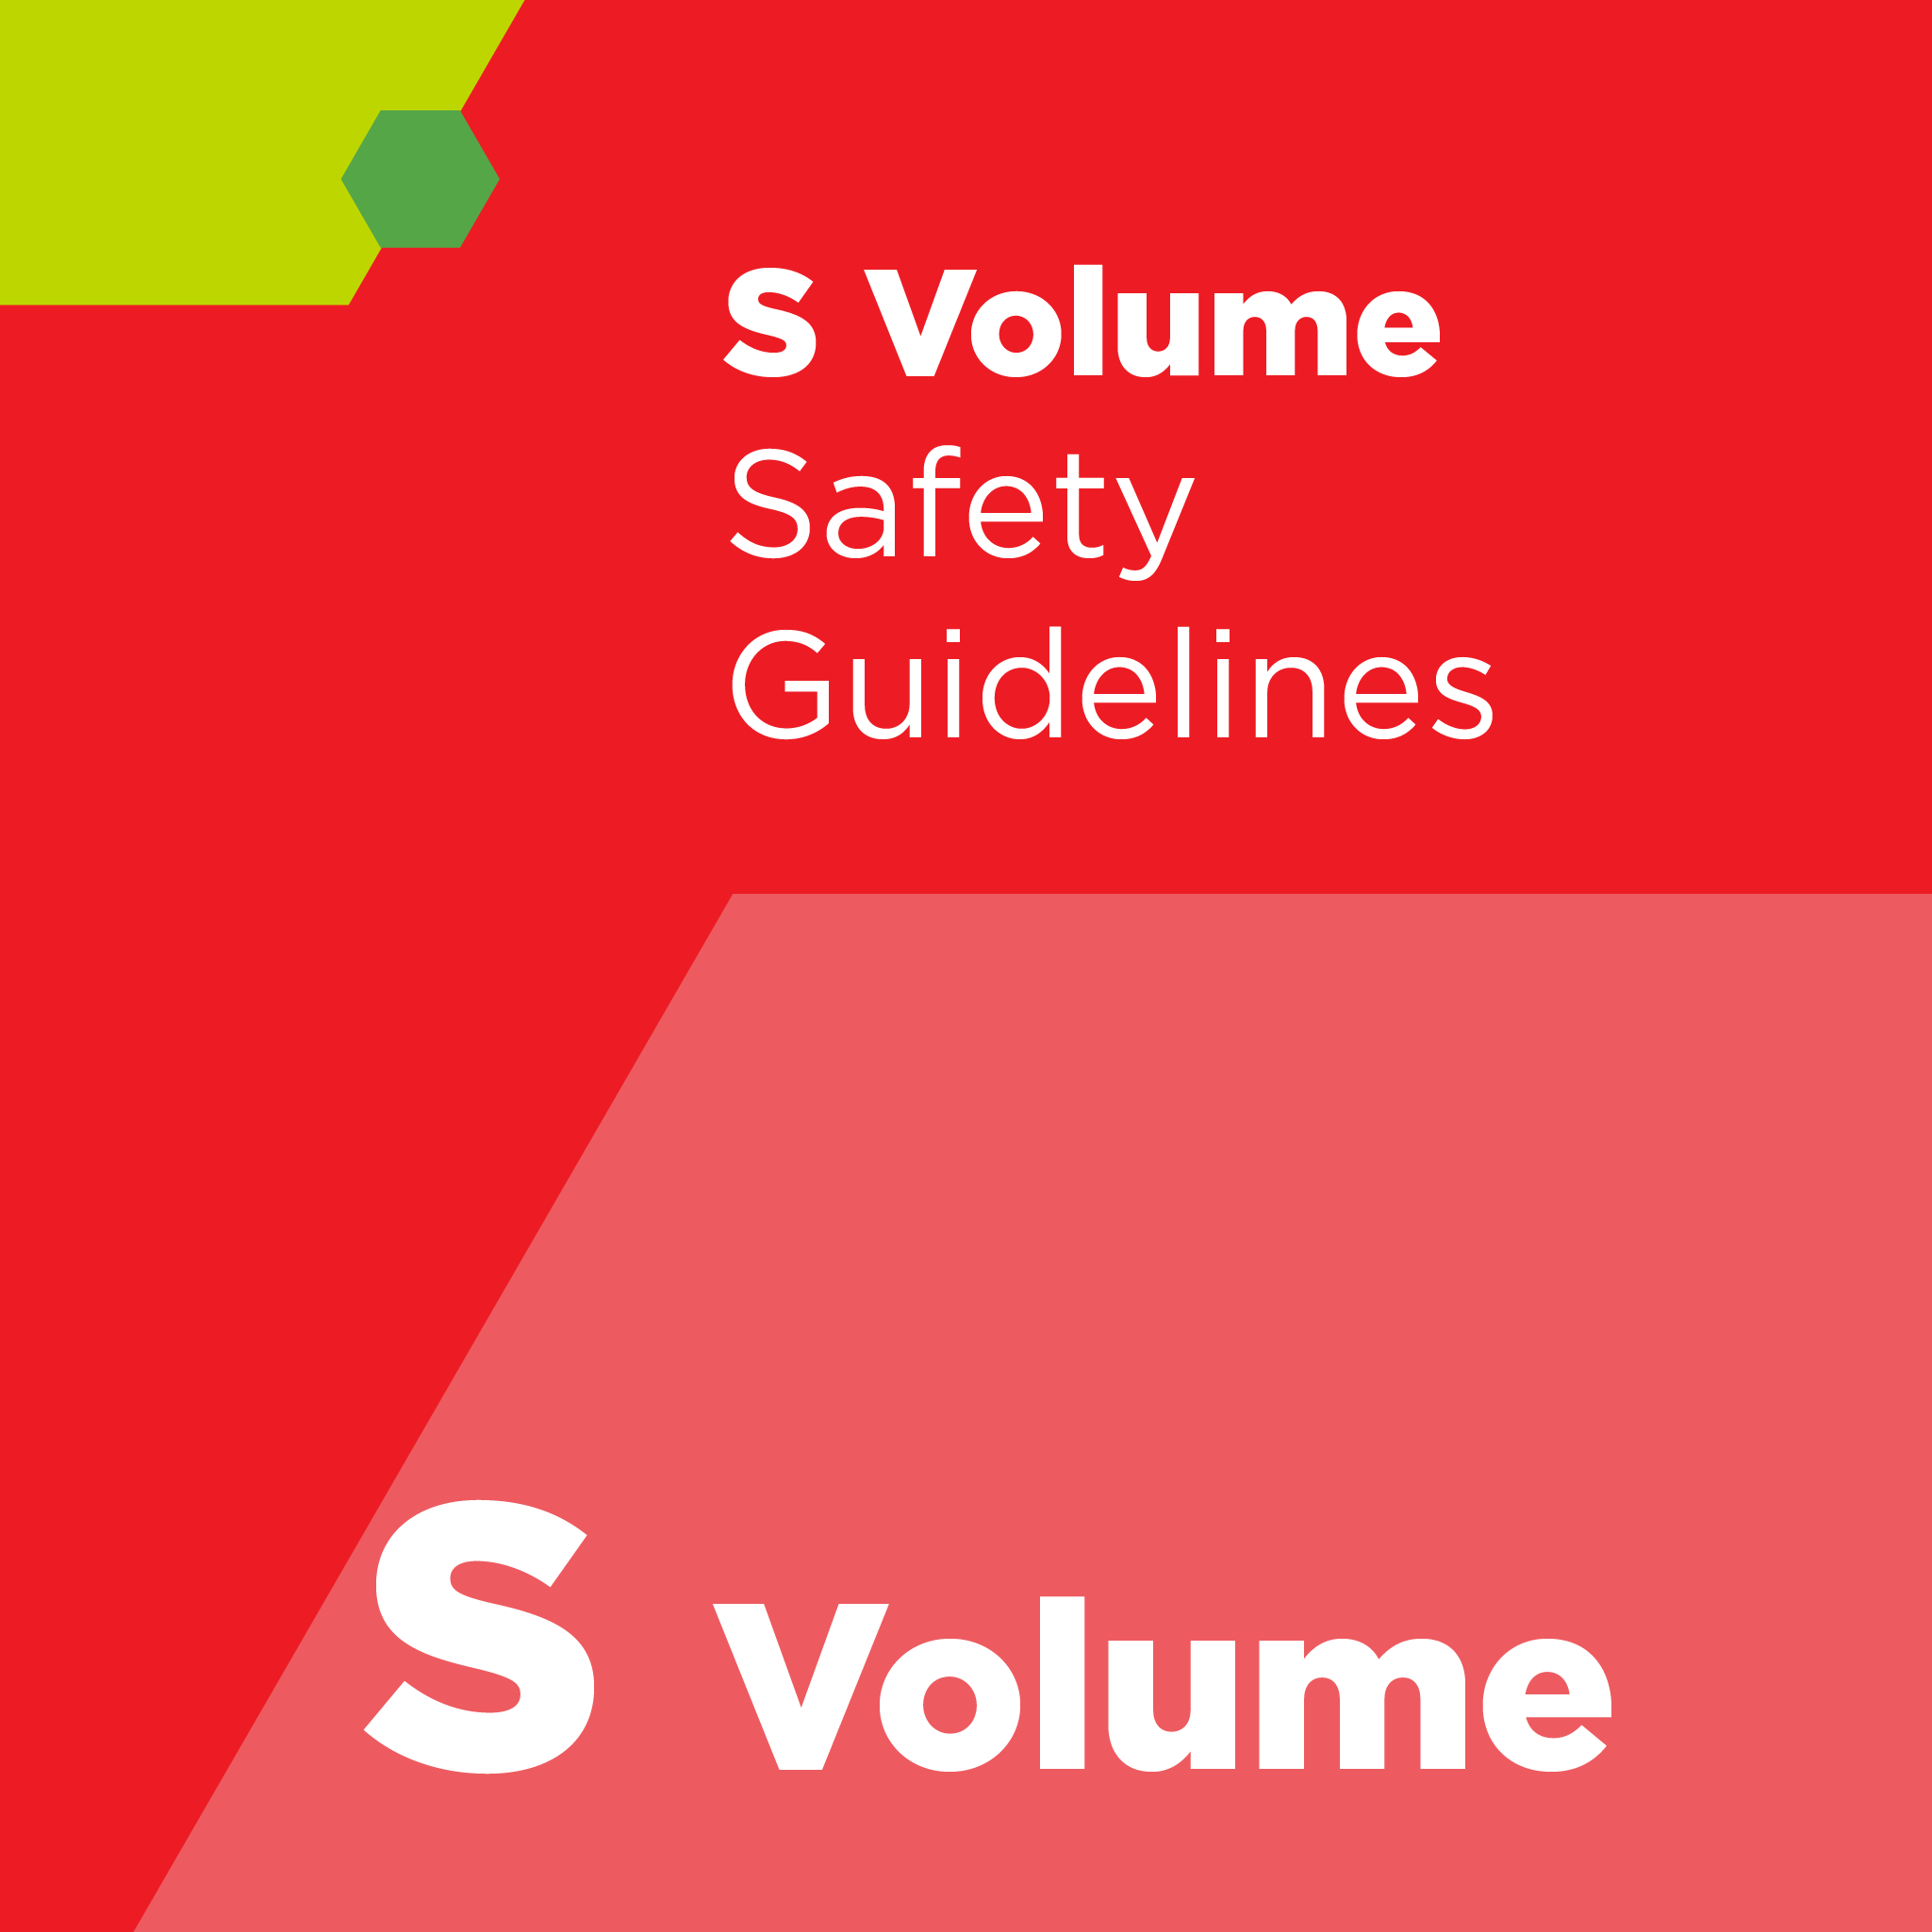 S01400 - SEMI S14 - 반도체 제조 장비의 화재 위험성 평가 및 완화 안전 가이드라인